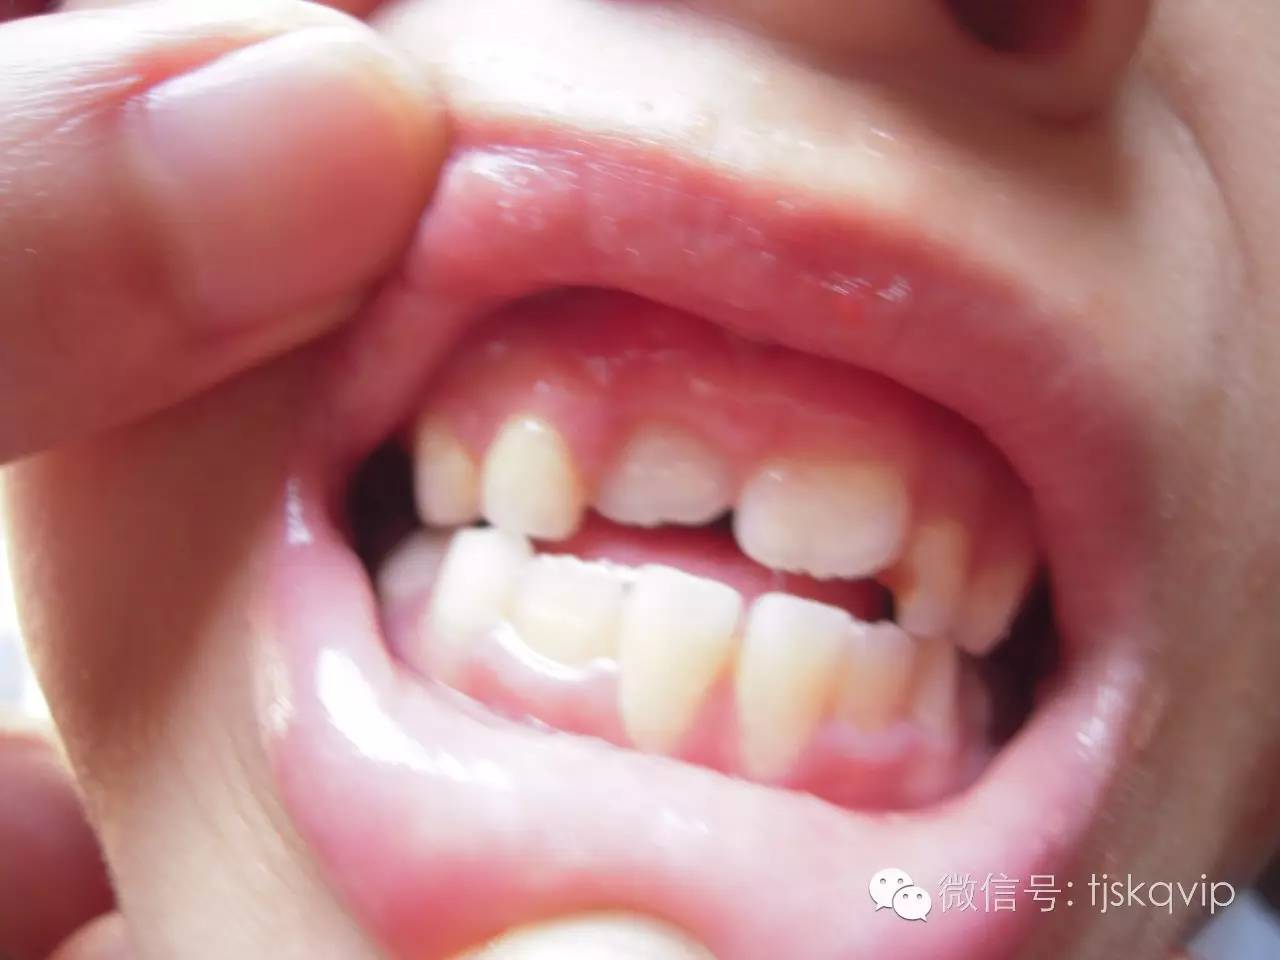 一些妈妈认为在换牙期给孩子吃软一点的食物,这样长出来的牙齿可以很